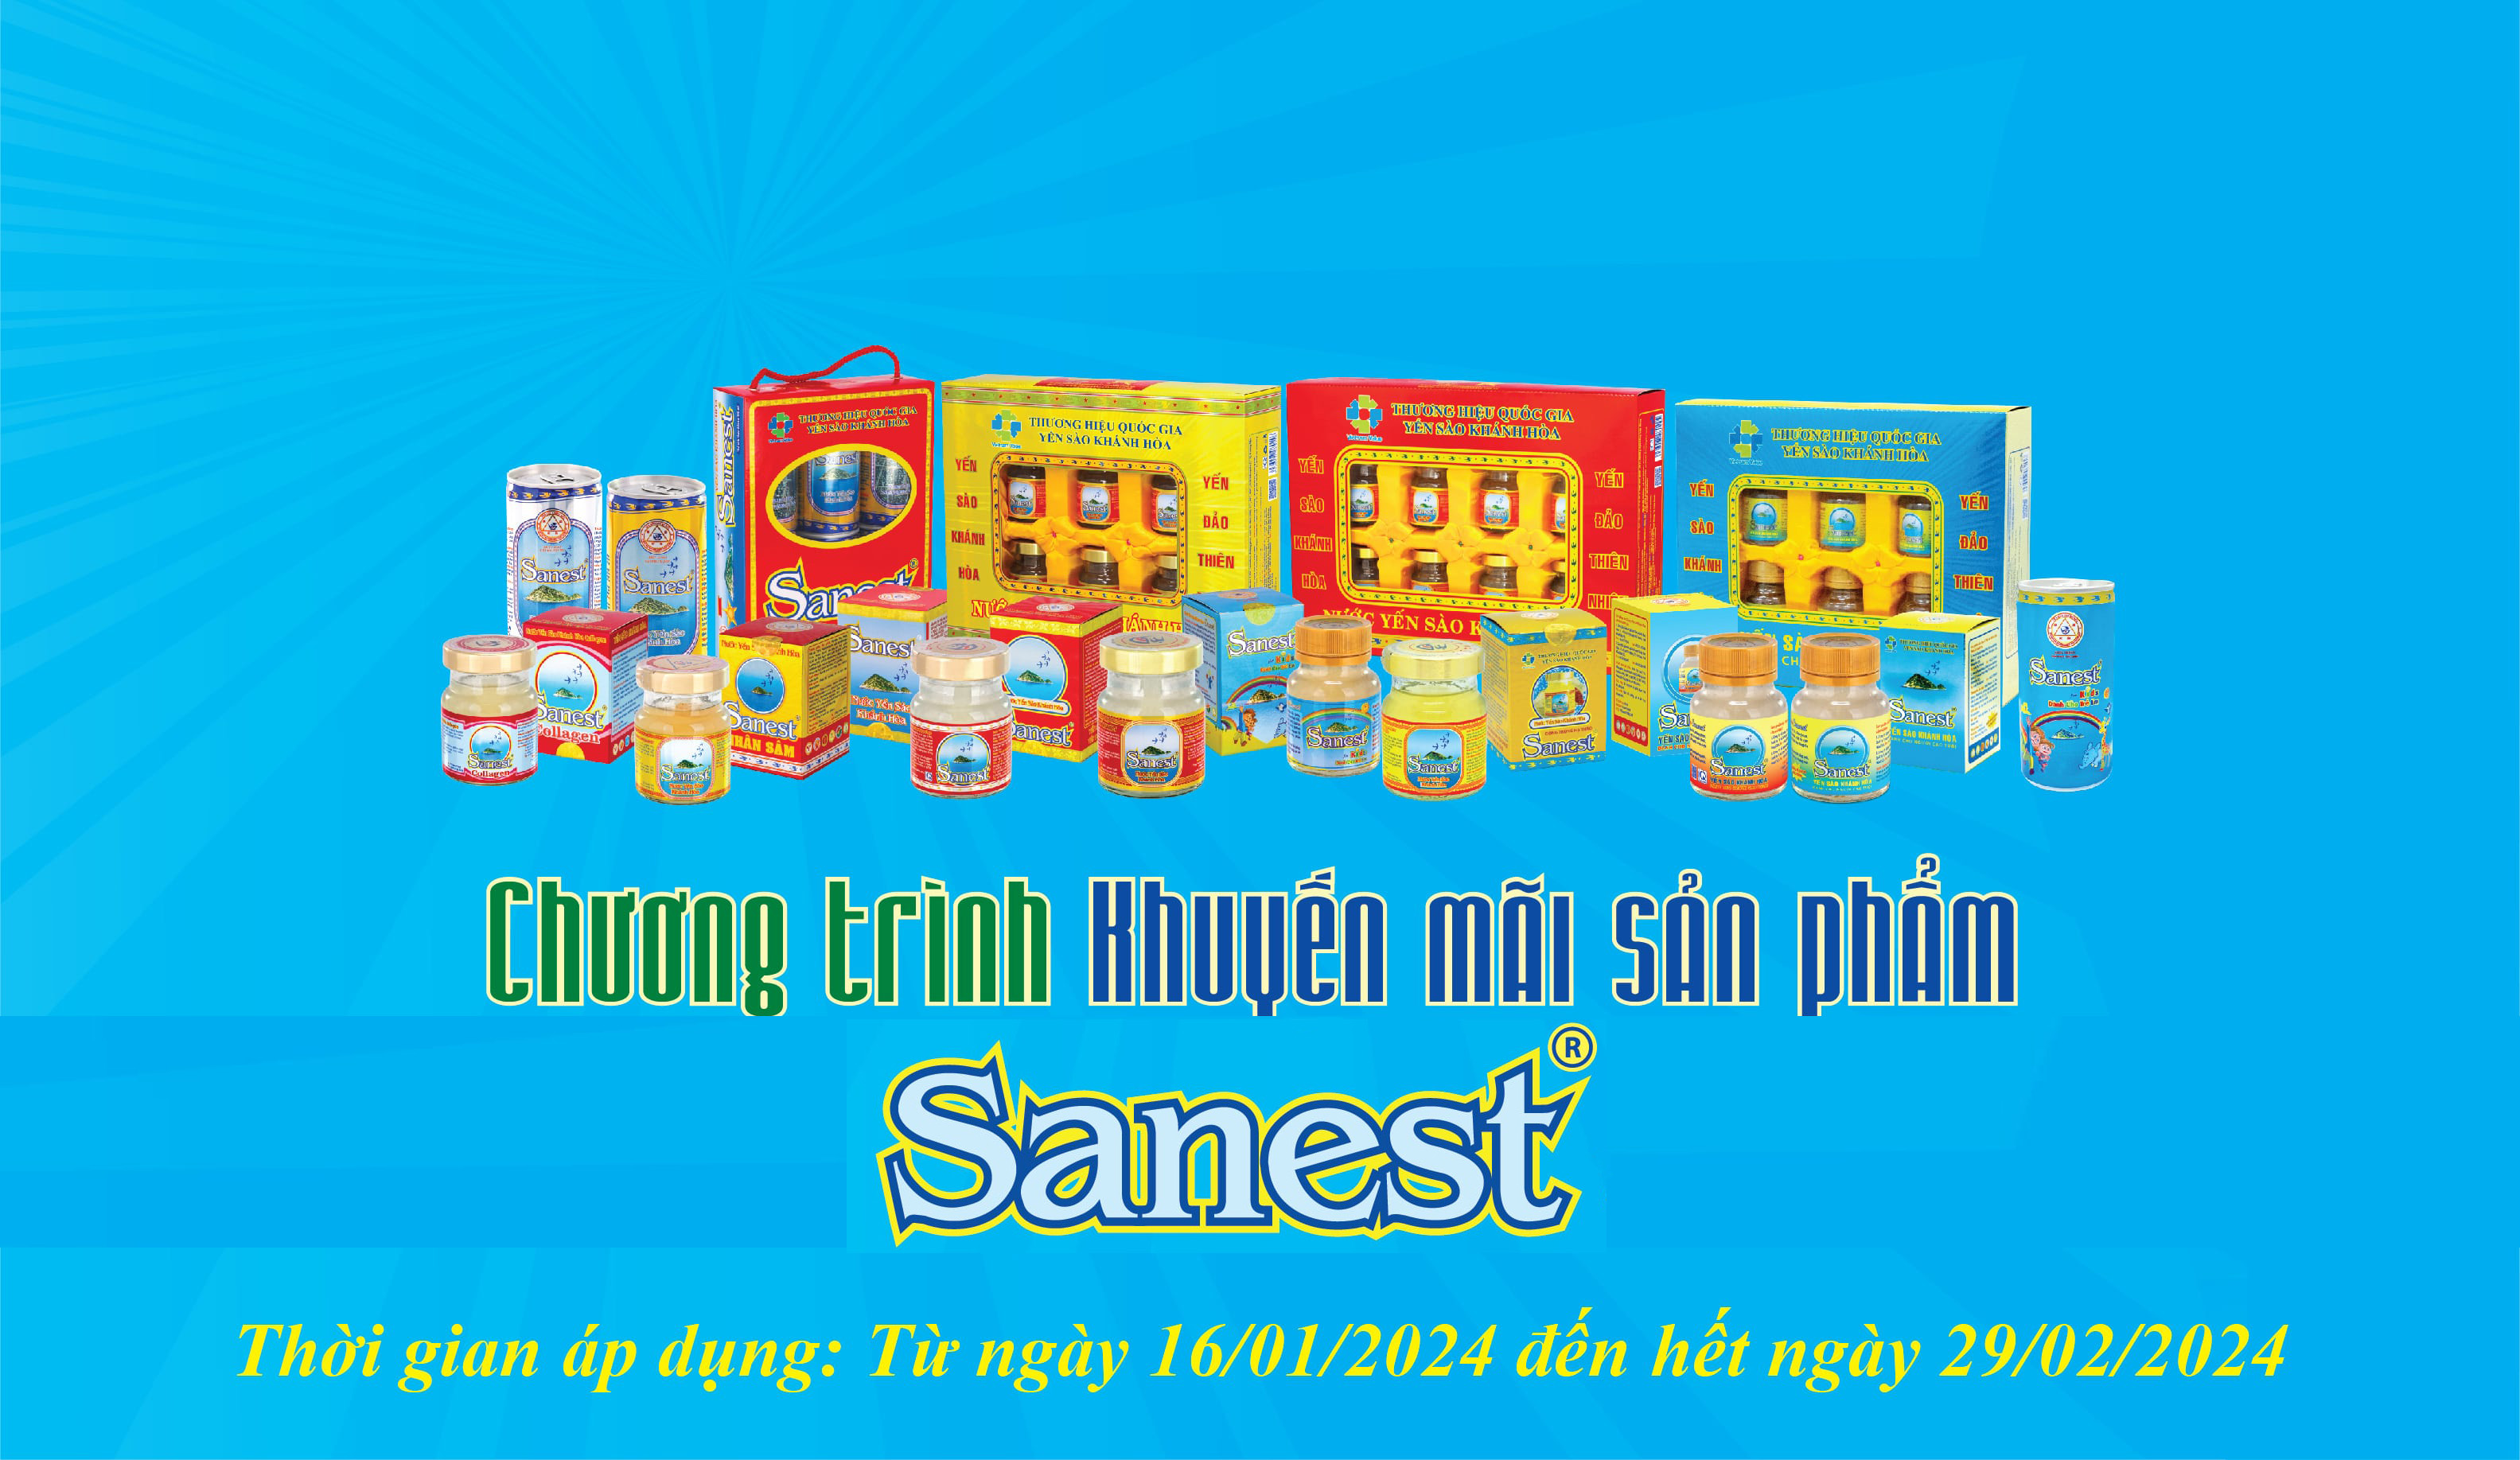 Chương trình khuyến mãi sản phẩm Sanest từ ngày 16/01/2024 đến hết ngày 29/02/2024